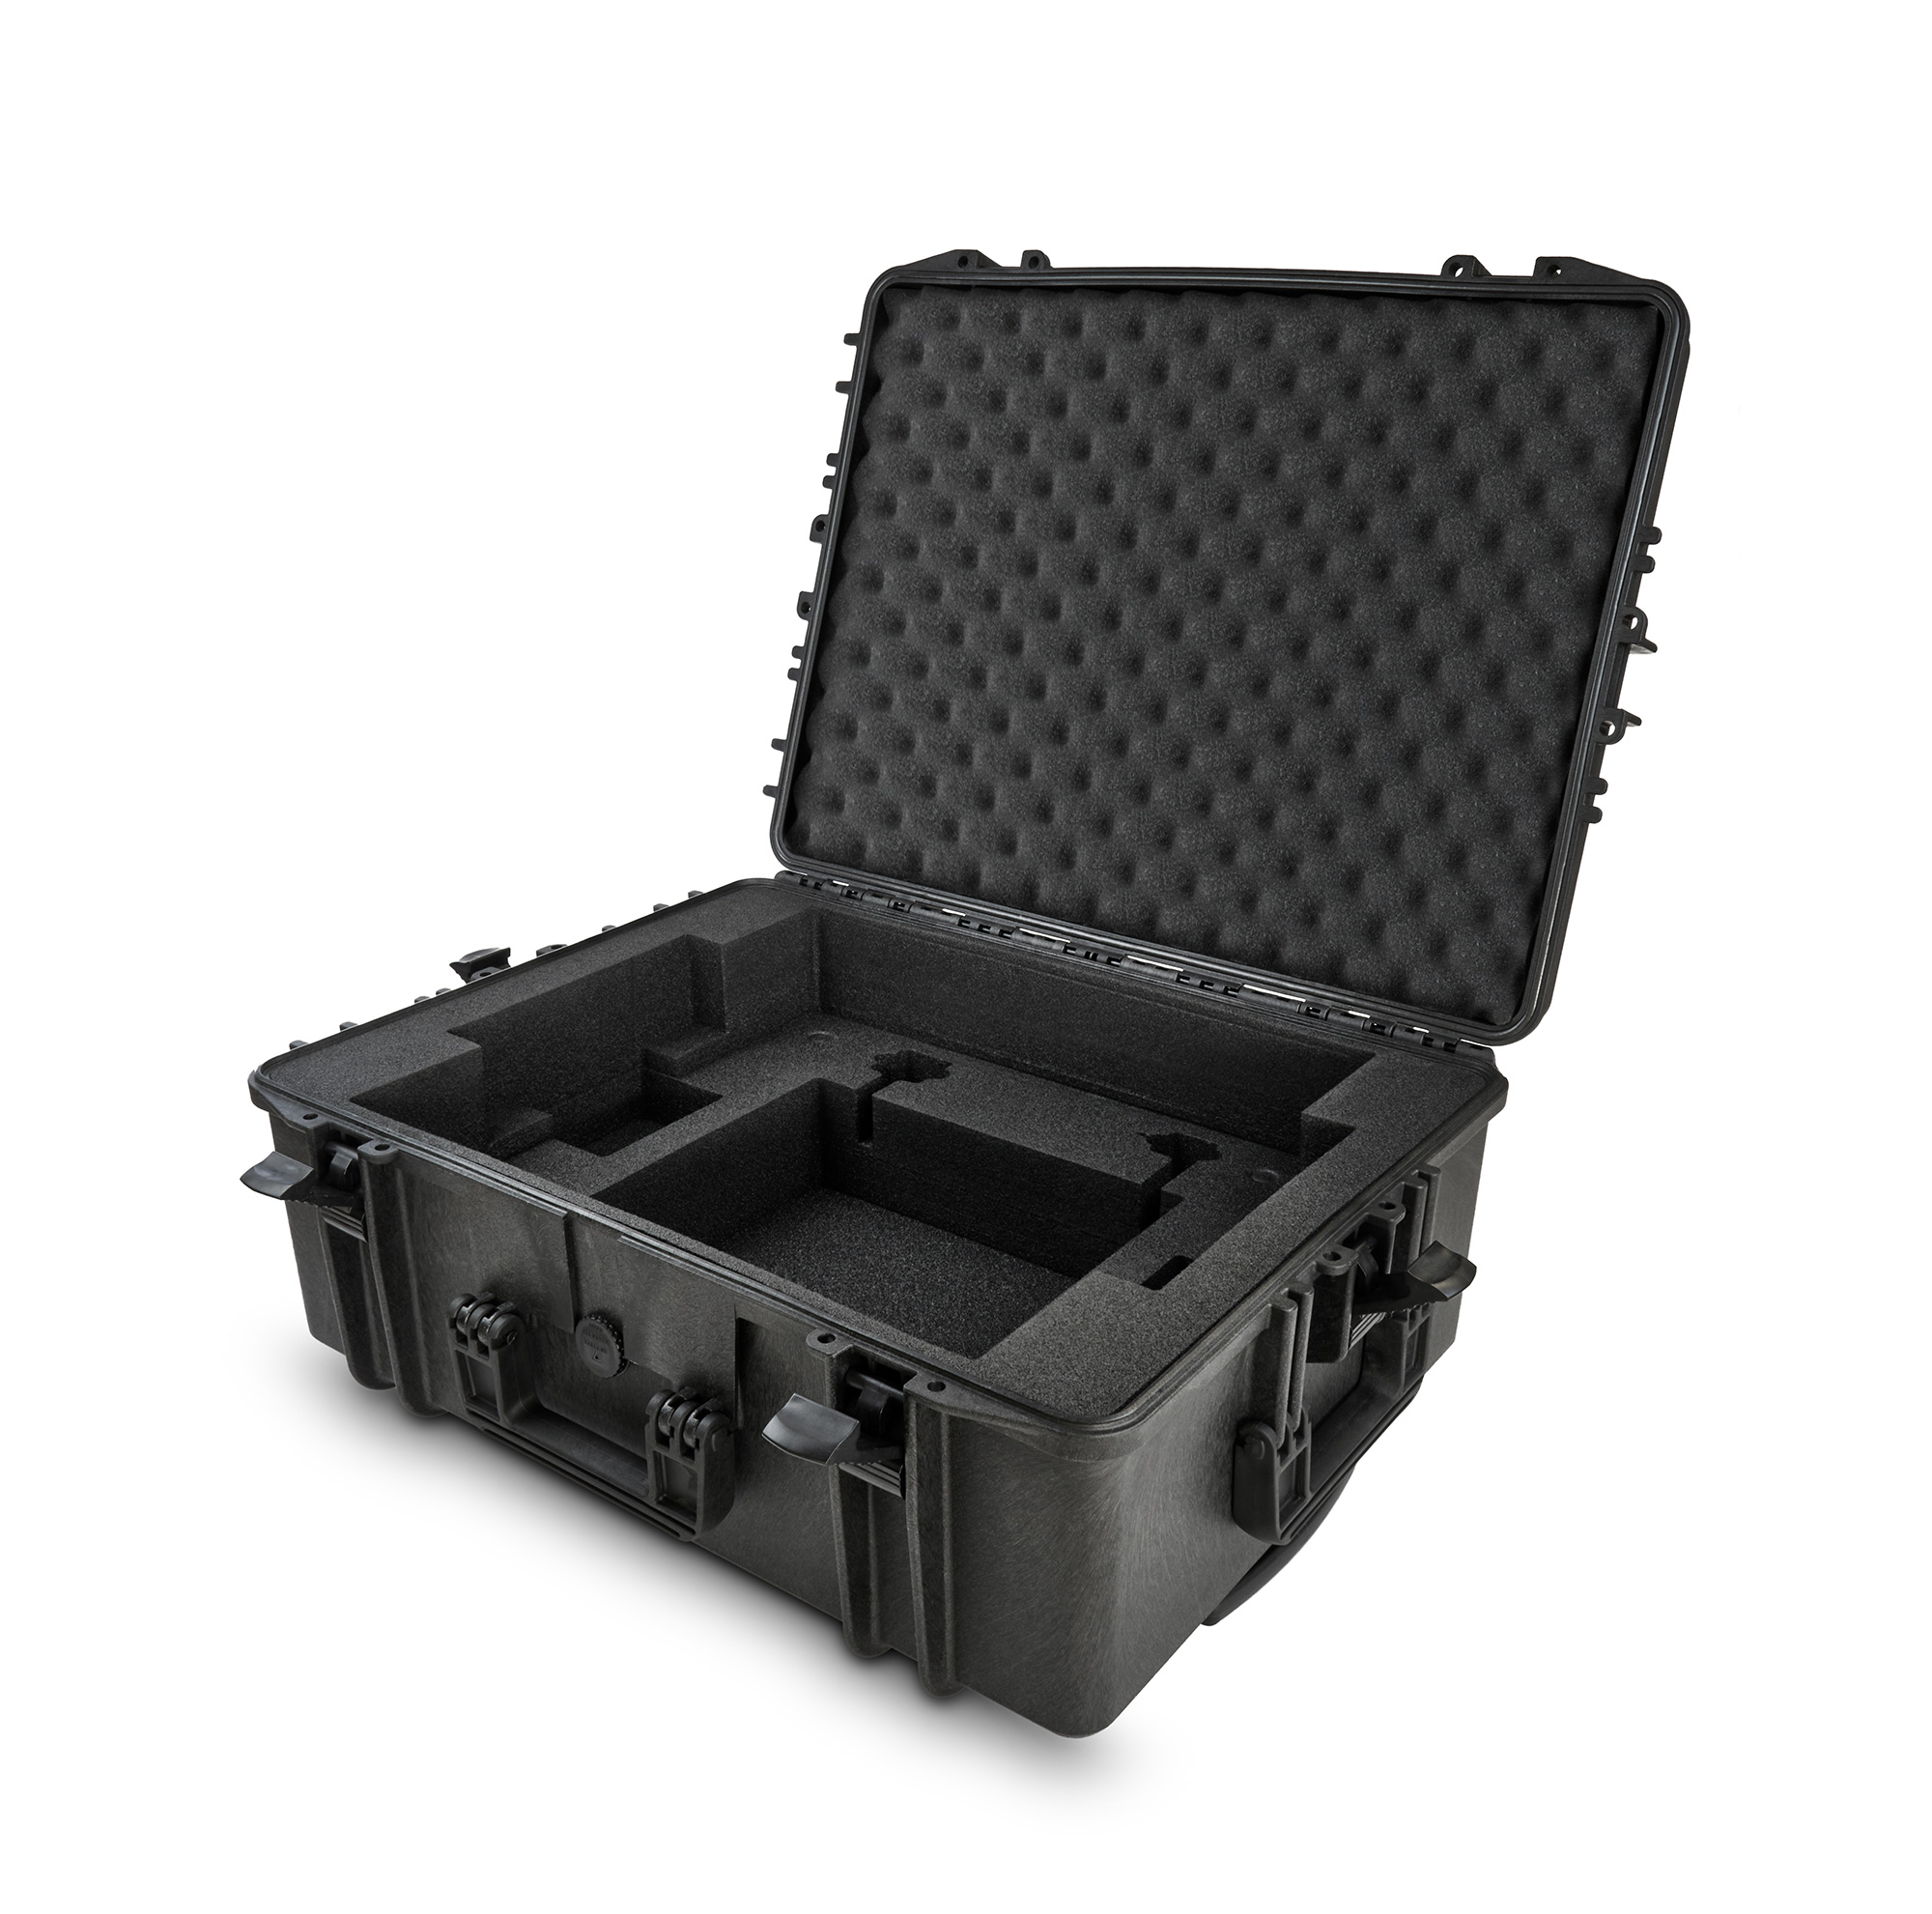 Nueva maleta Pioneer DJRC-V10 para el mixer Pioneer DJM-V10